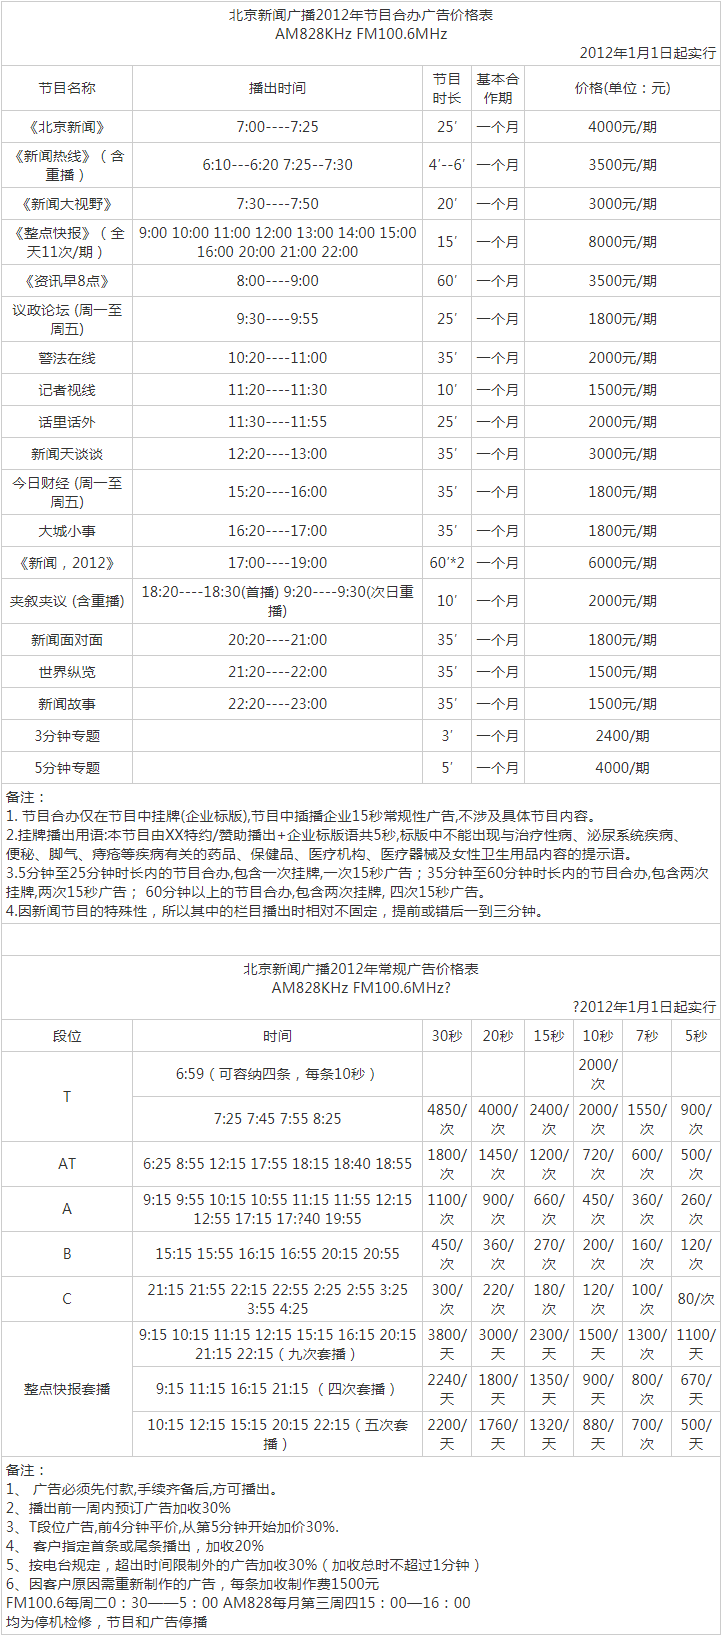 2012北京人民广播电台新闻广播 FM100.6广告报价表.png